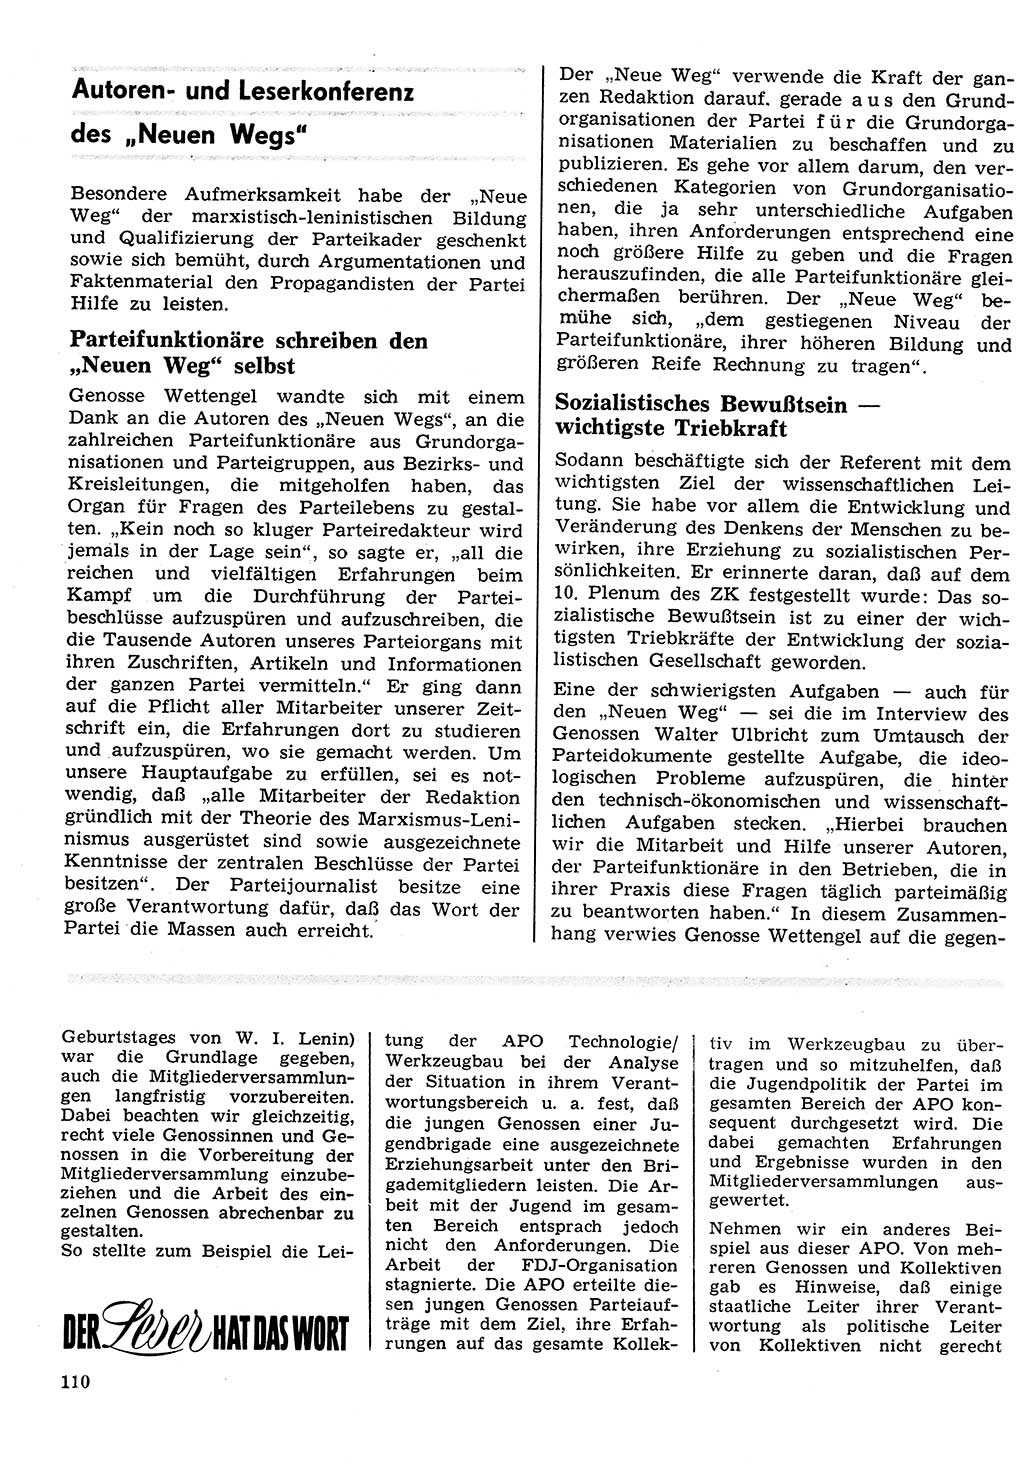 Neuer Weg (NW), Organ des Zentralkomitees (ZK) der SED (Sozialistische Einheitspartei Deutschlands) für Fragen des Parteilebens, 26. Jahrgang [Deutsche Demokratische Republik (DDR)] 1971, Seite 110 (NW ZK SED DDR 1971, S. 110)